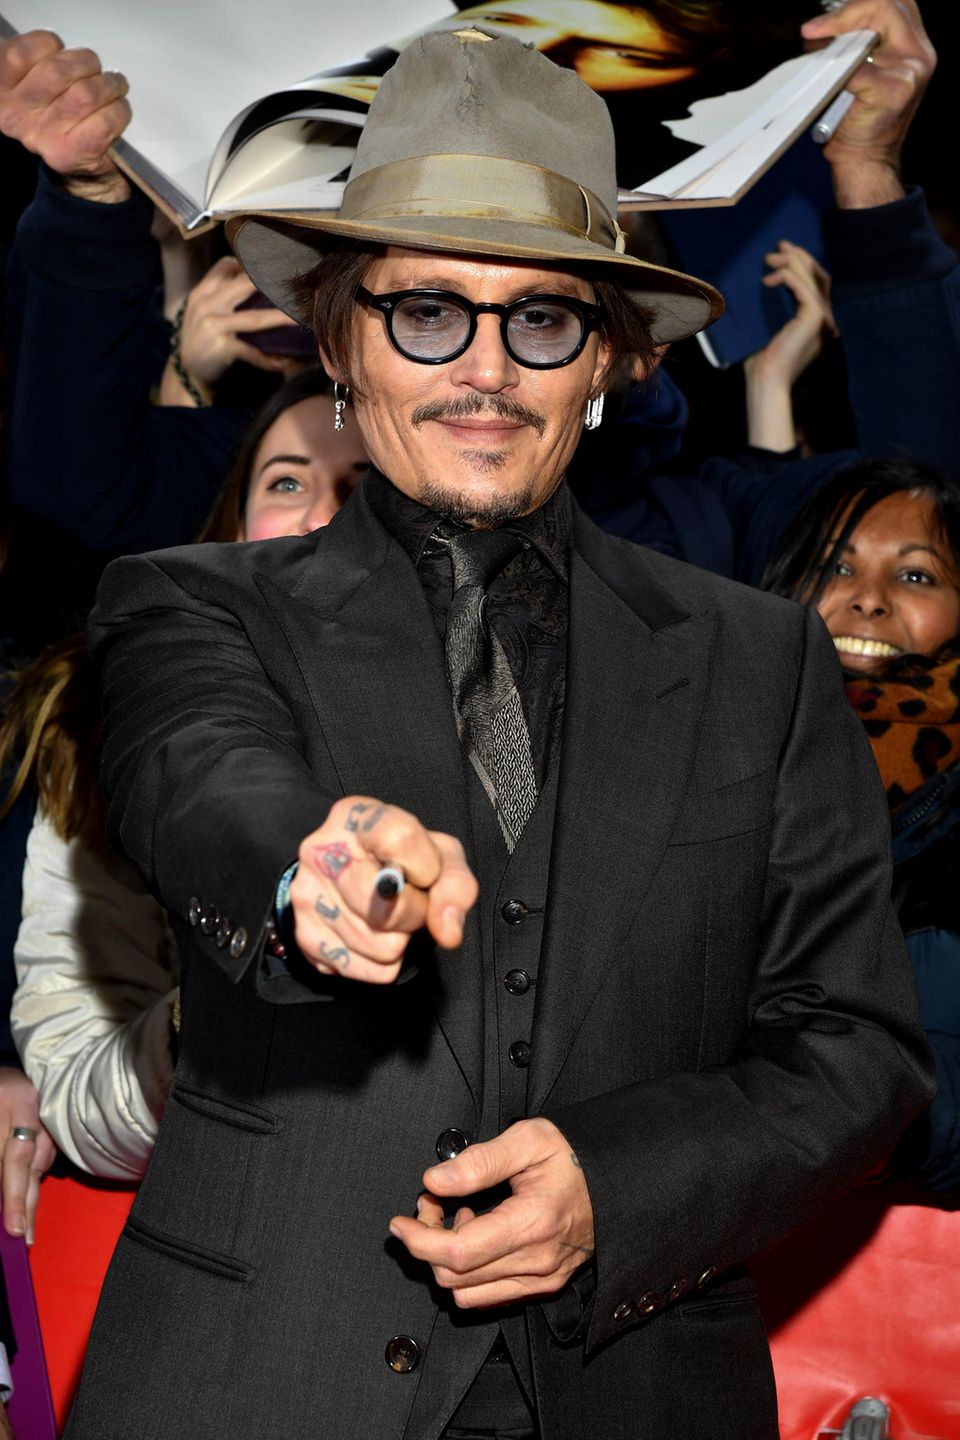 Publikumsliebling Johnny Depp bringt Hollywood-Glamour nach Deutschland. Als der Schauspieler auf dem roten Teppich eintrifft, wird er von den Berliner Fans jubelnd in Empfang genommen.